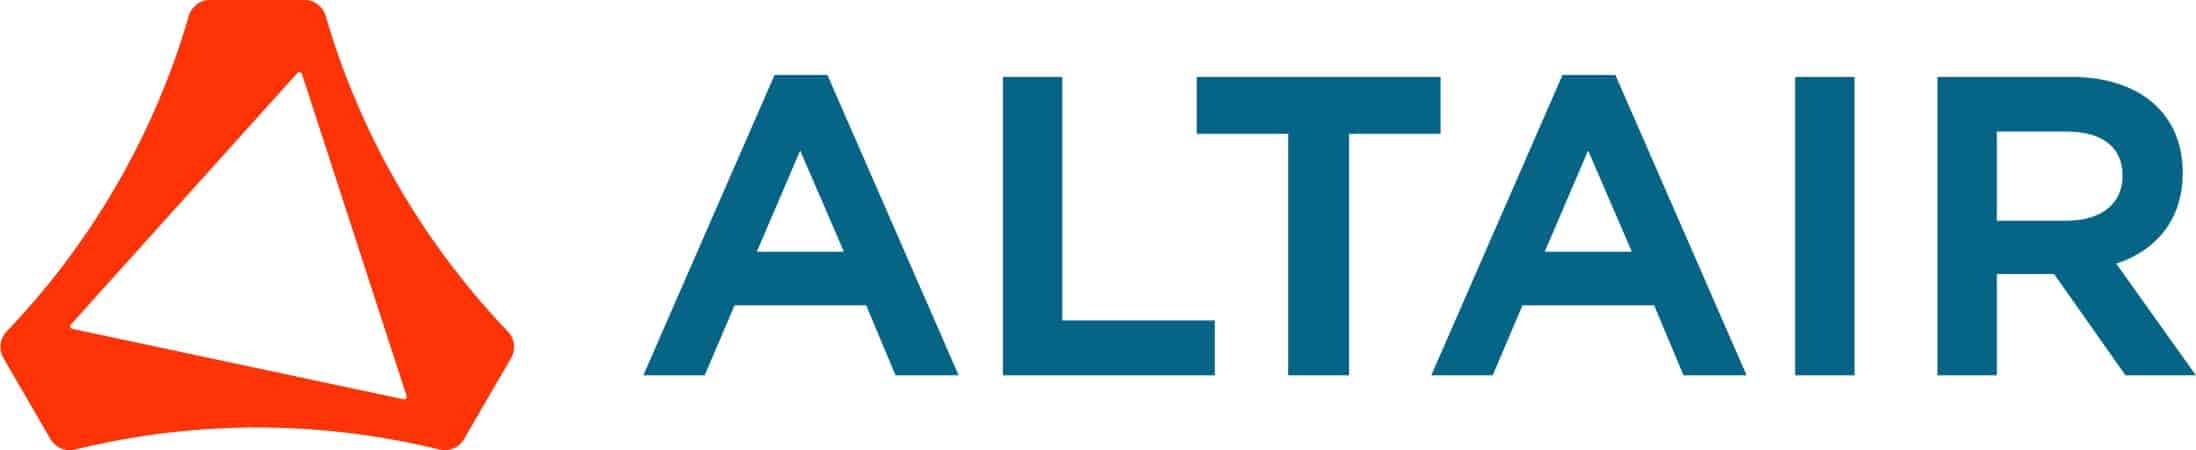 Altair Brandmark - Print - CMYK - Coated - Full Color logo